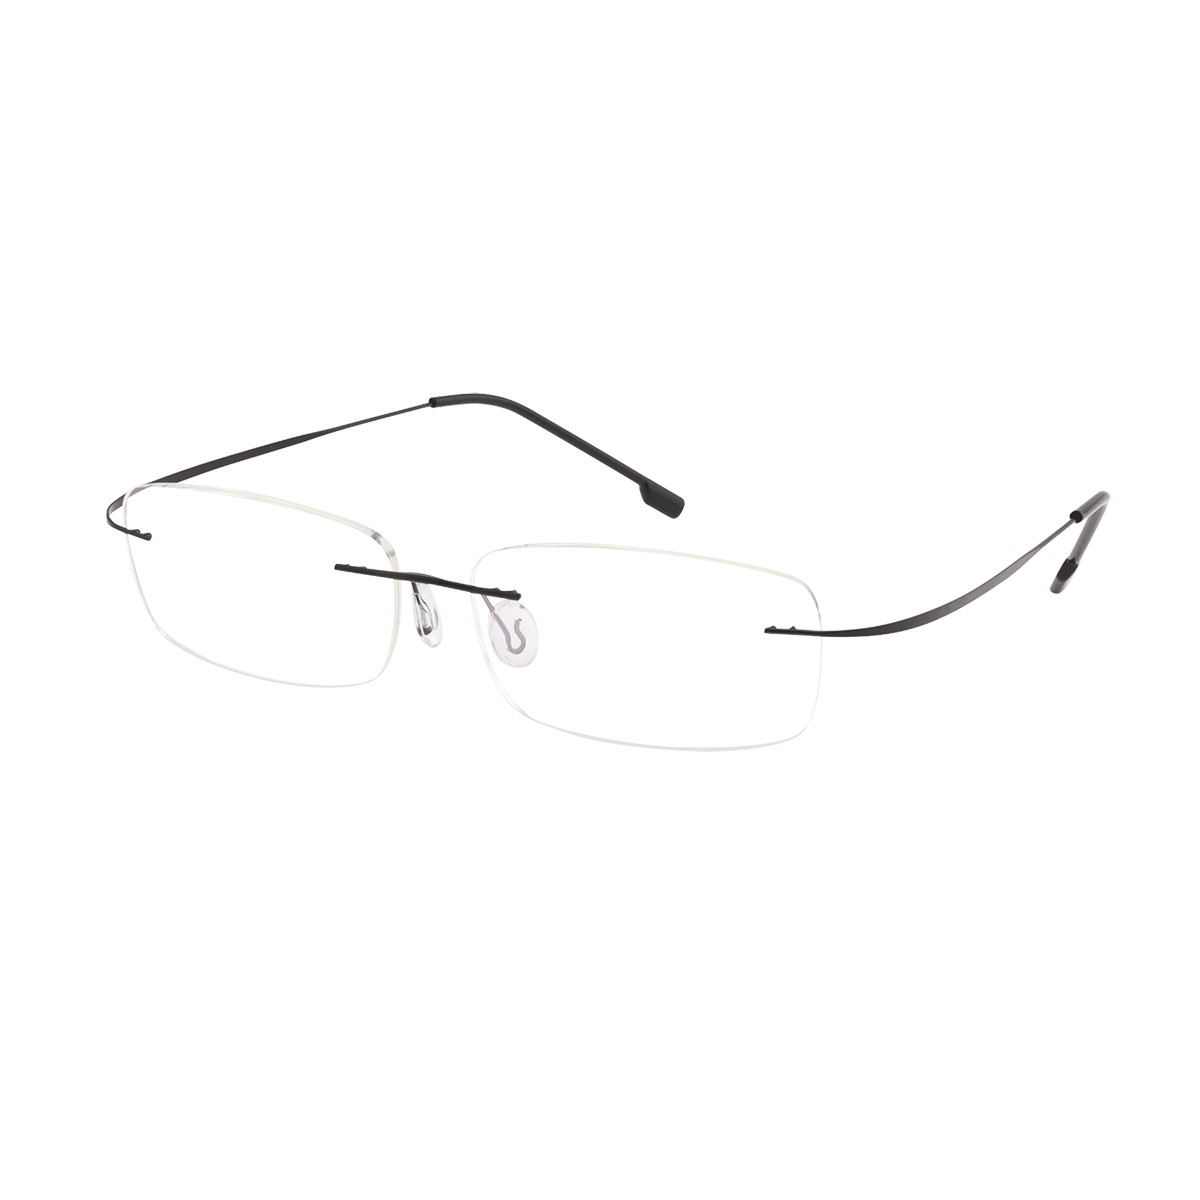 Morrow - Rectangle Black Reading Glasses for Men